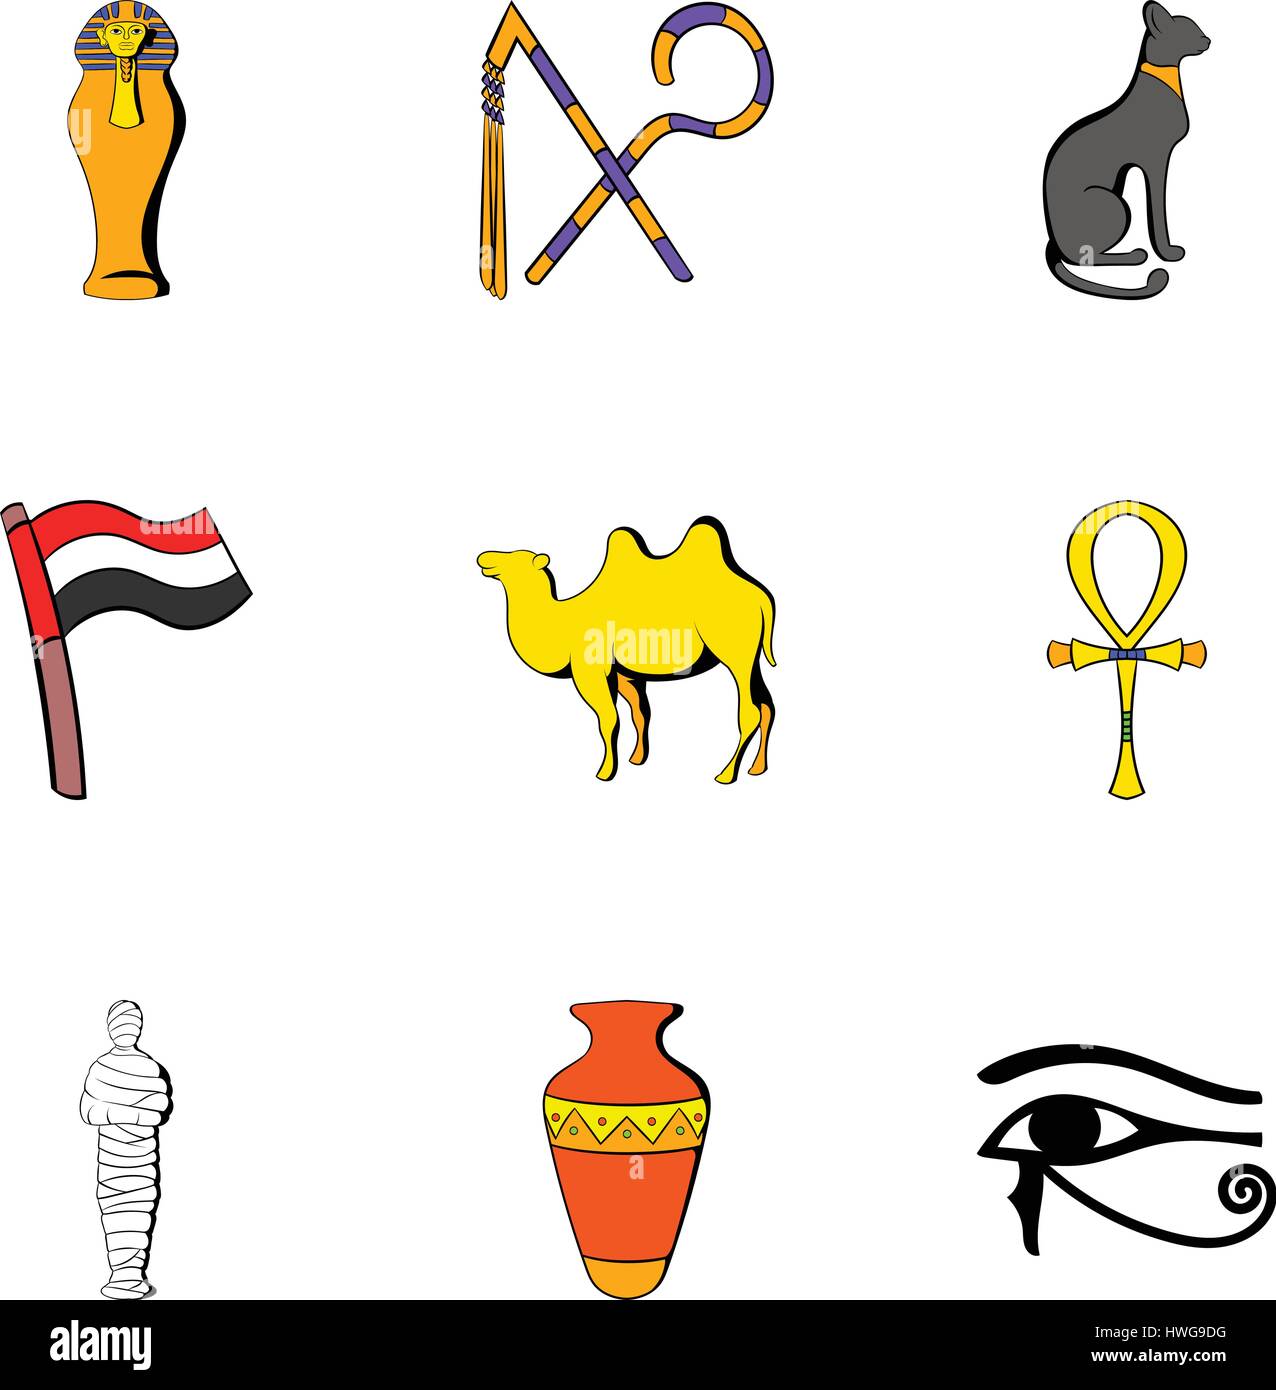 L'Égypte, cartoon style icons set Illustration de Vecteur